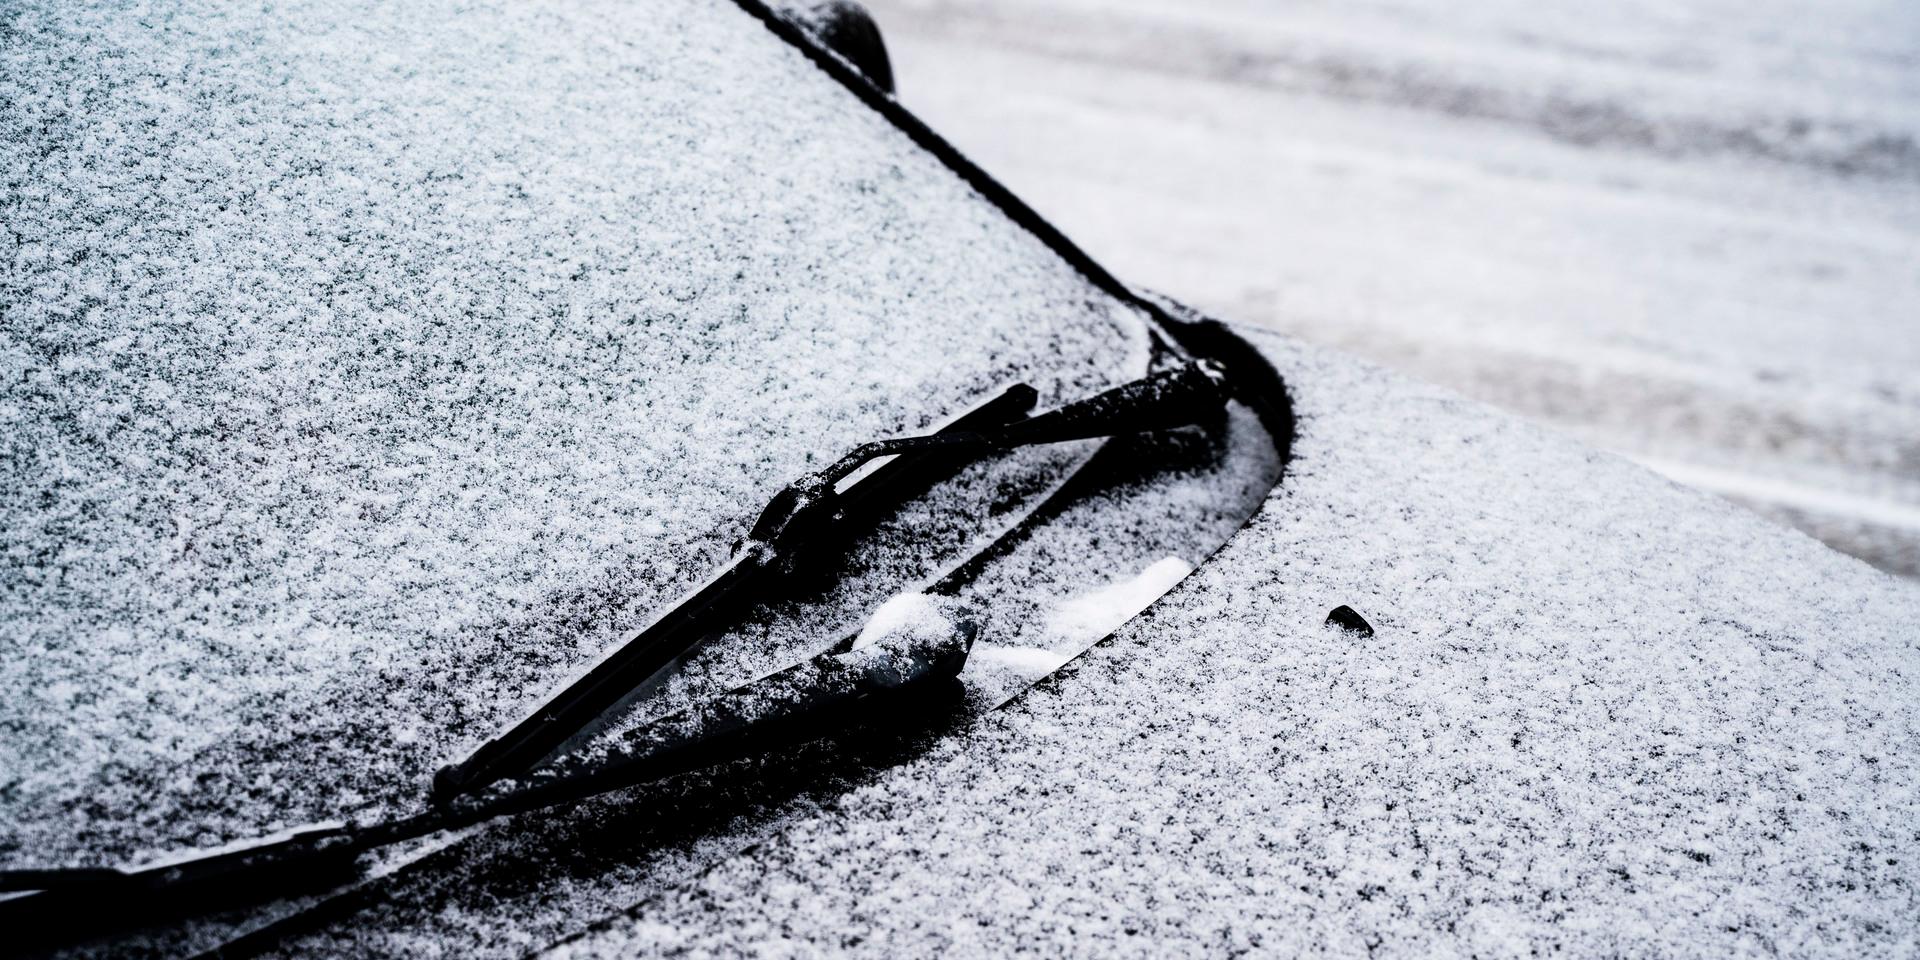 Den kalla polarluften drar in över Partille under helgen och kan ta med sig snö – men också lämna utrymme för några solglimtar. Det gäller dock att vara försiktig på vägarna, det kan bli riktig halt.